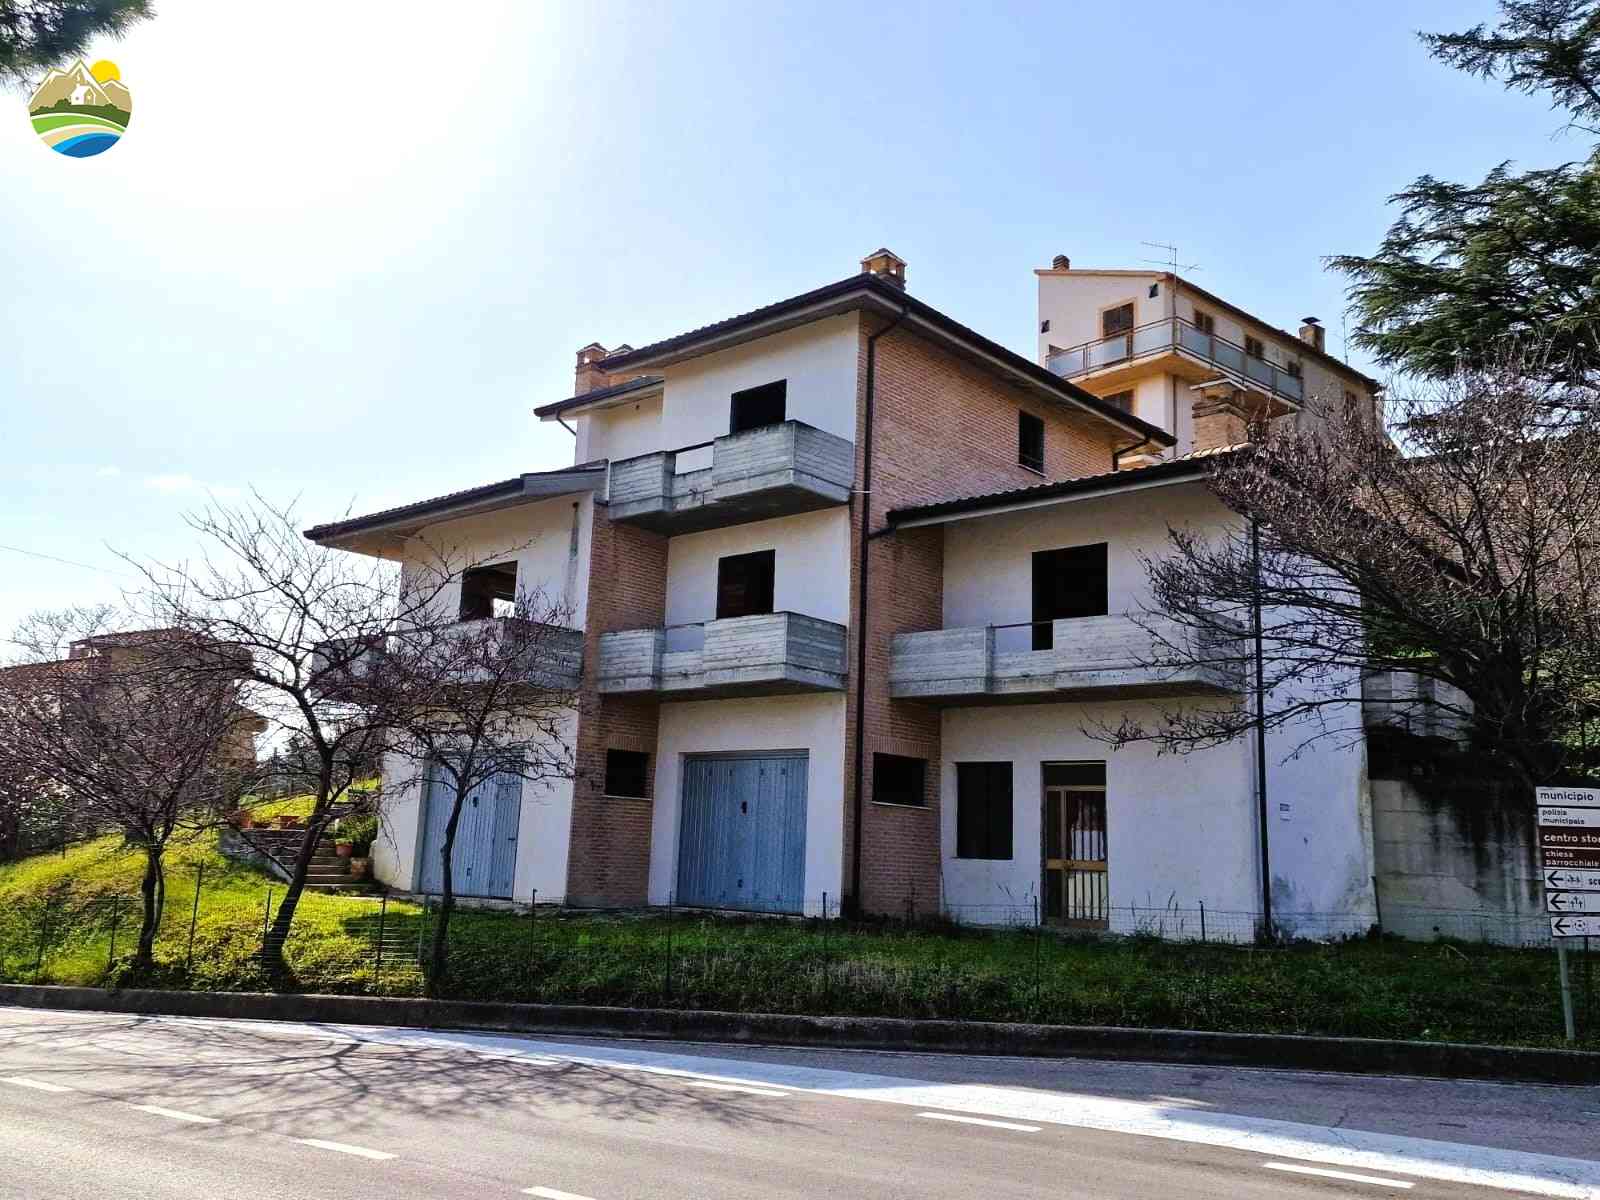 Villa Villa Mandorlo - Castilenti - EUR 129.856